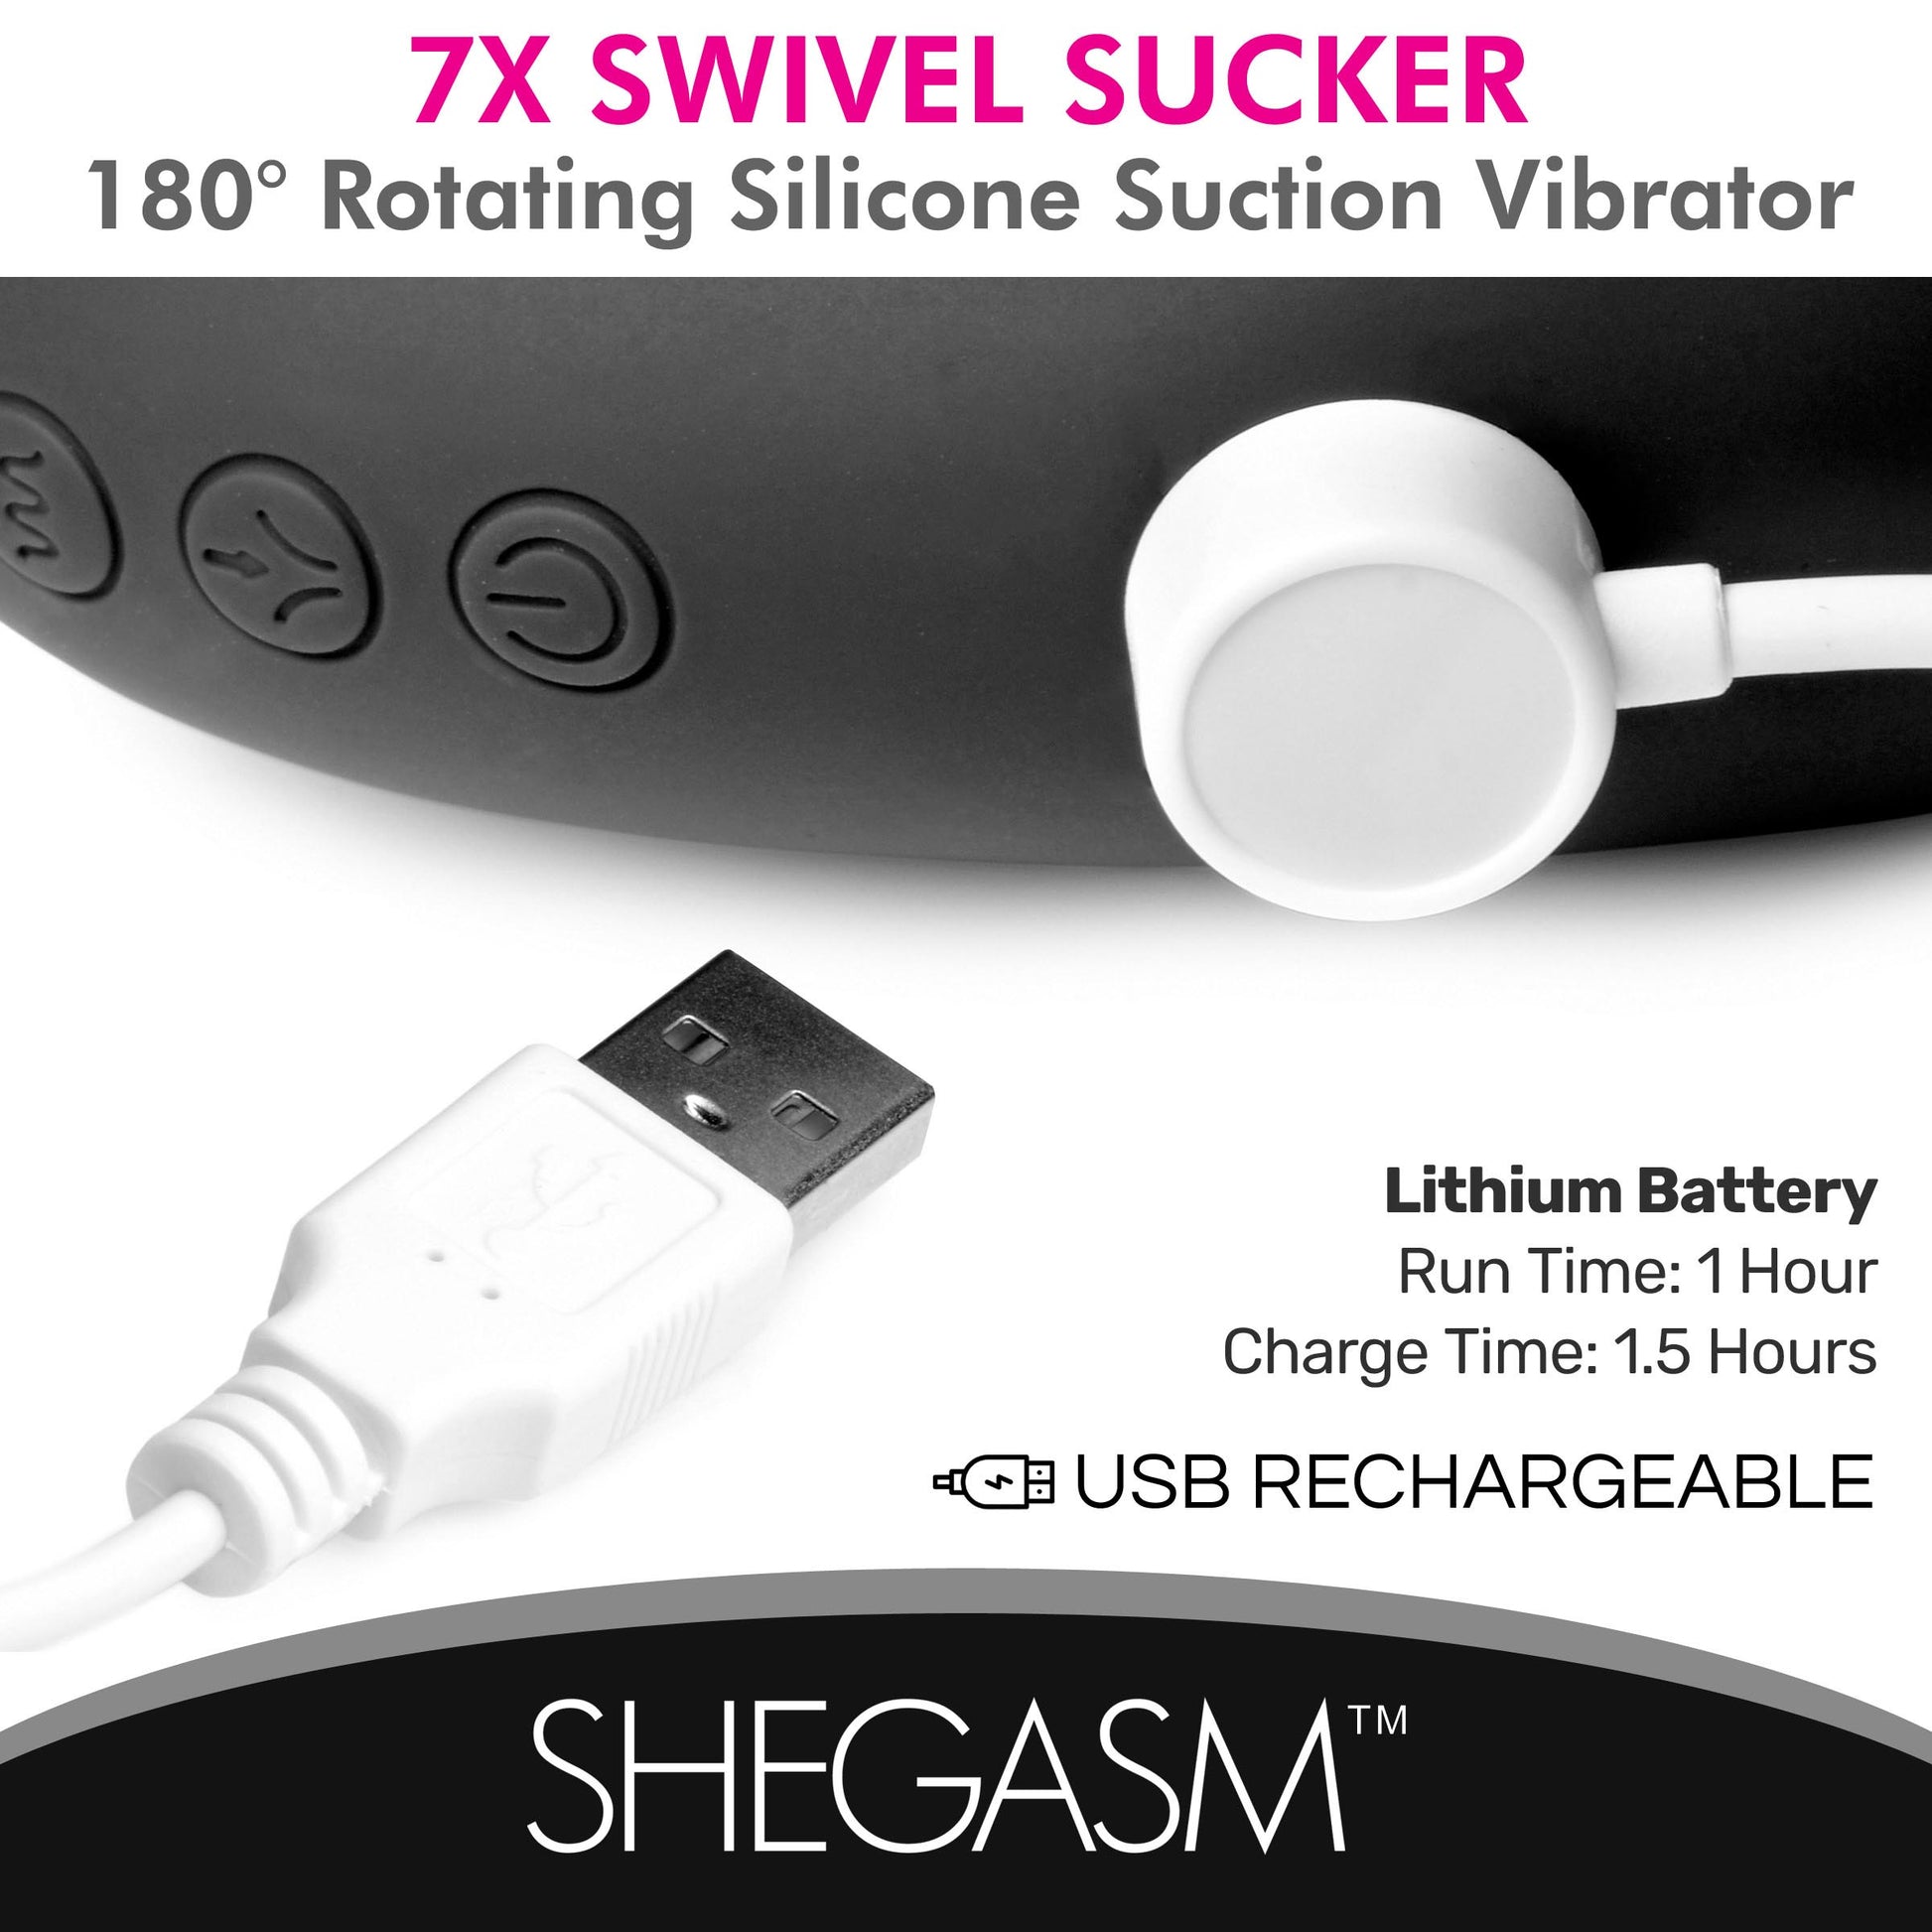 7X Swivel Sucker 180 Rotating Silicone Suction Vibrator - UABDSM